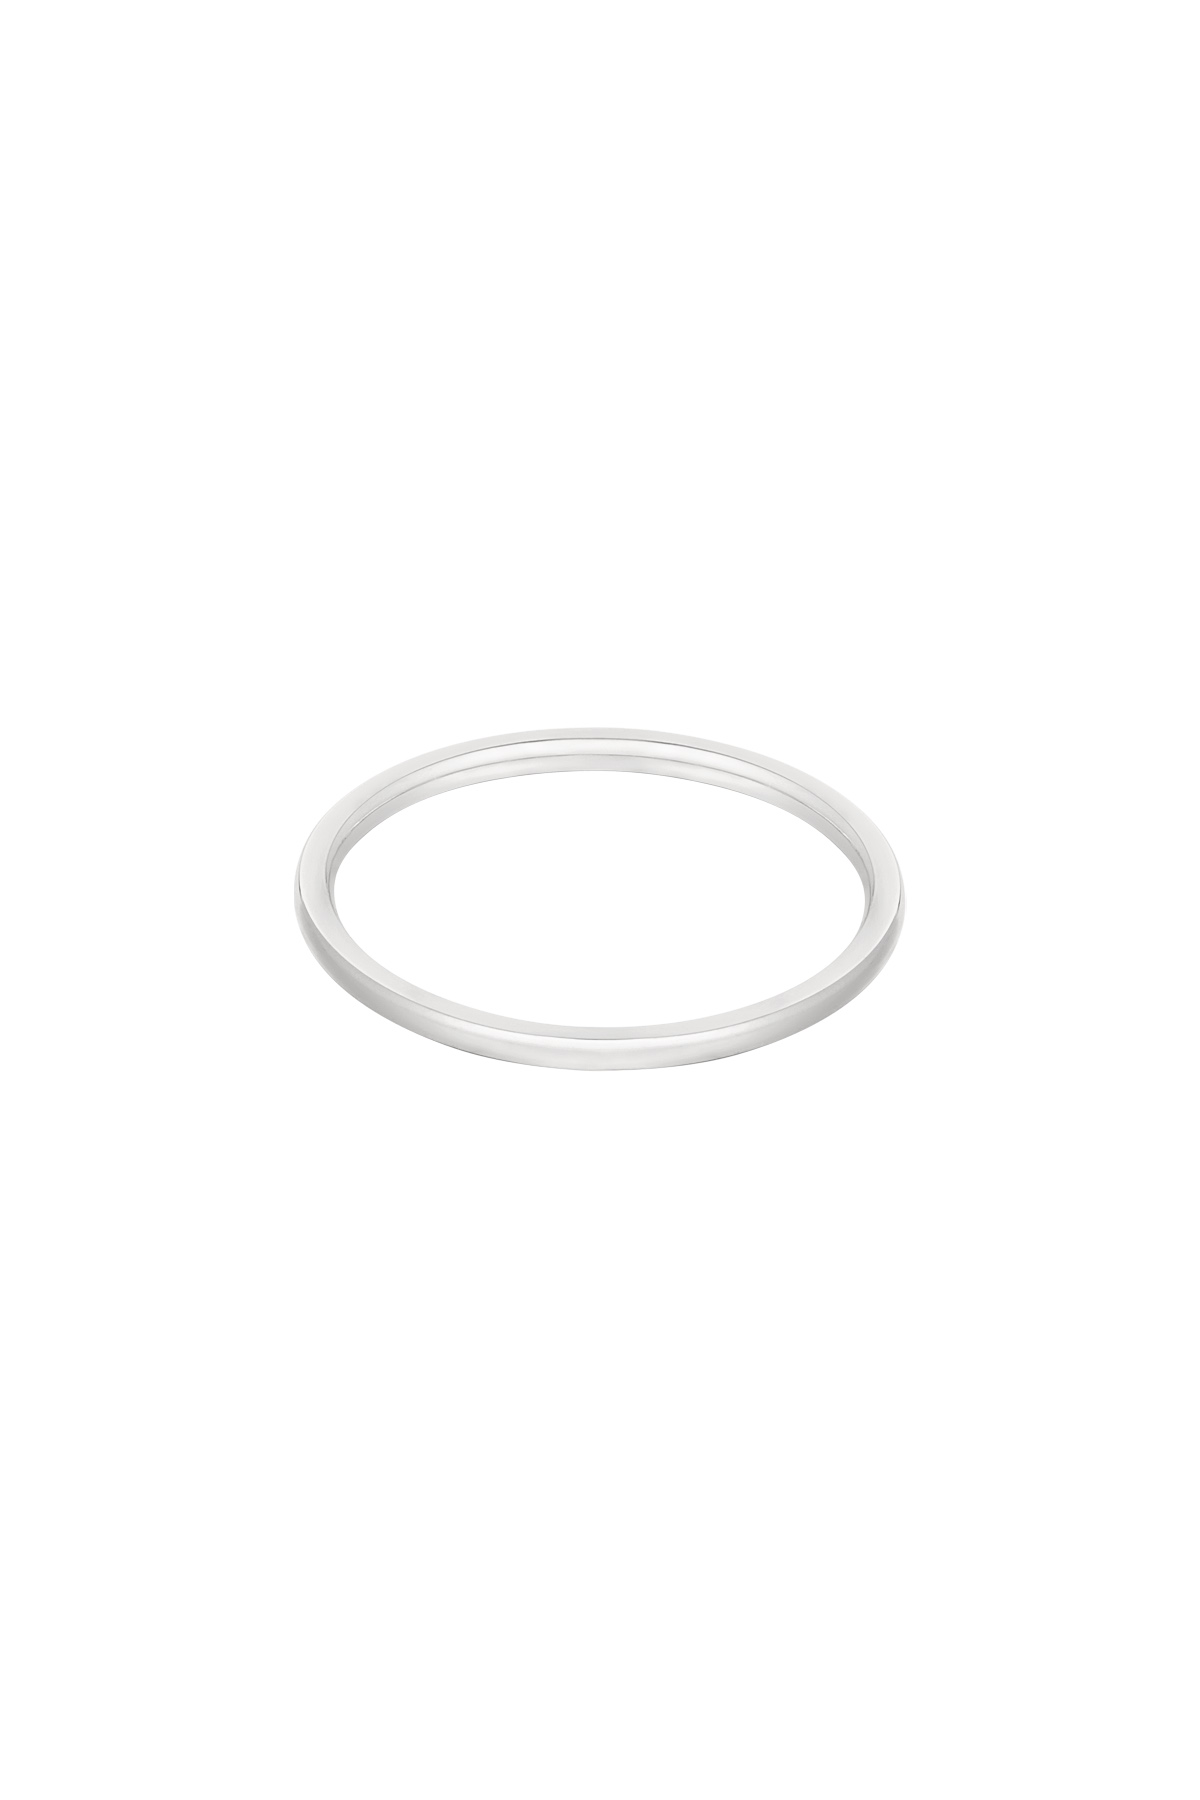 Ring minimalistisch - zilver